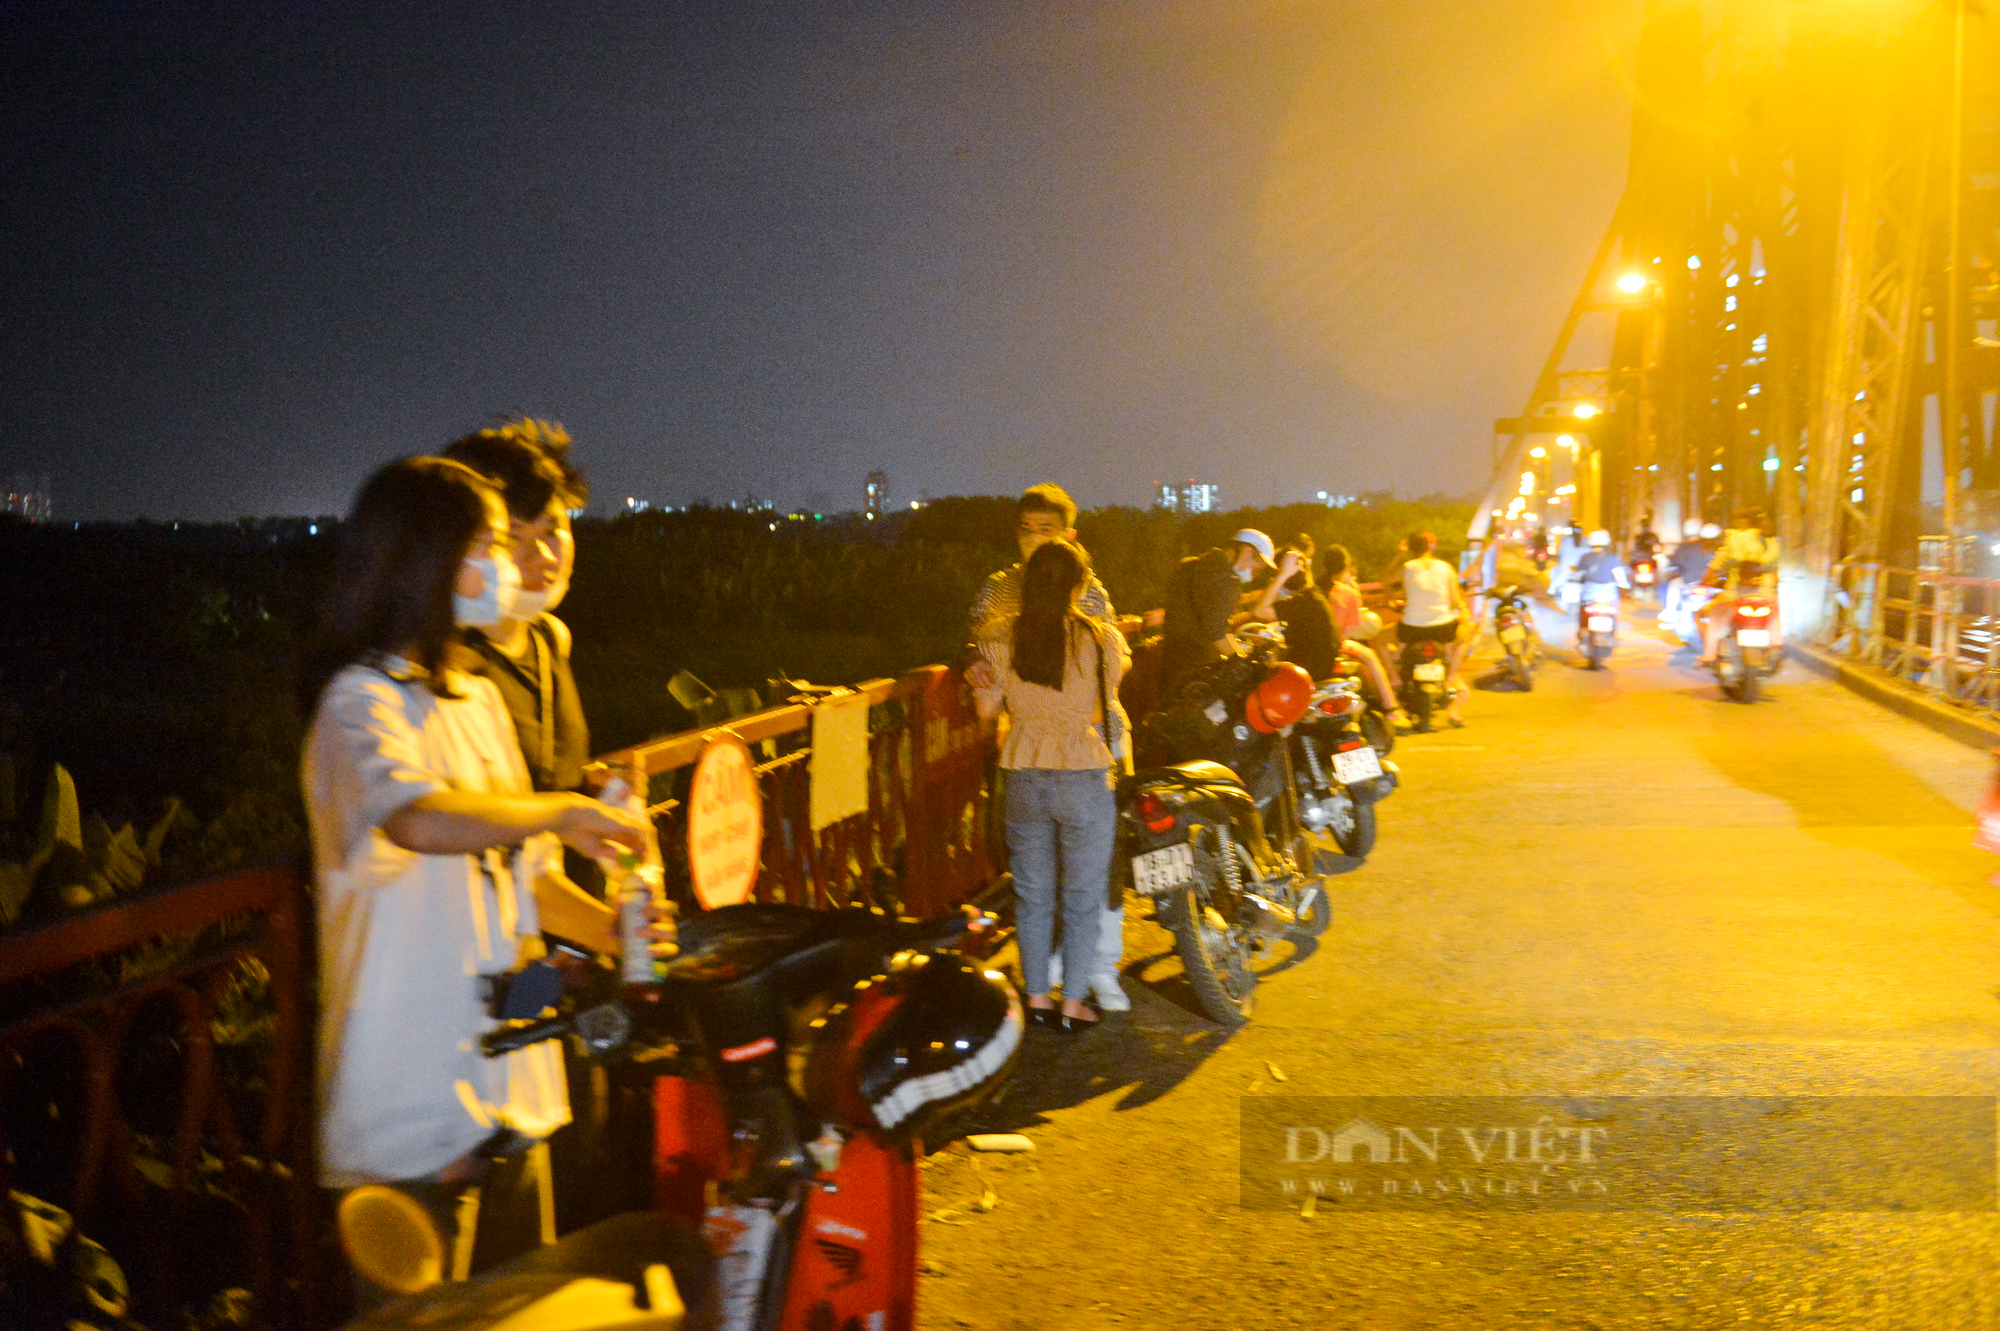 Đêm trung thu, hàng trăm nam thanh nữ tú lên cầu Long Biên tâm sự và cái kết  - Ảnh 7.